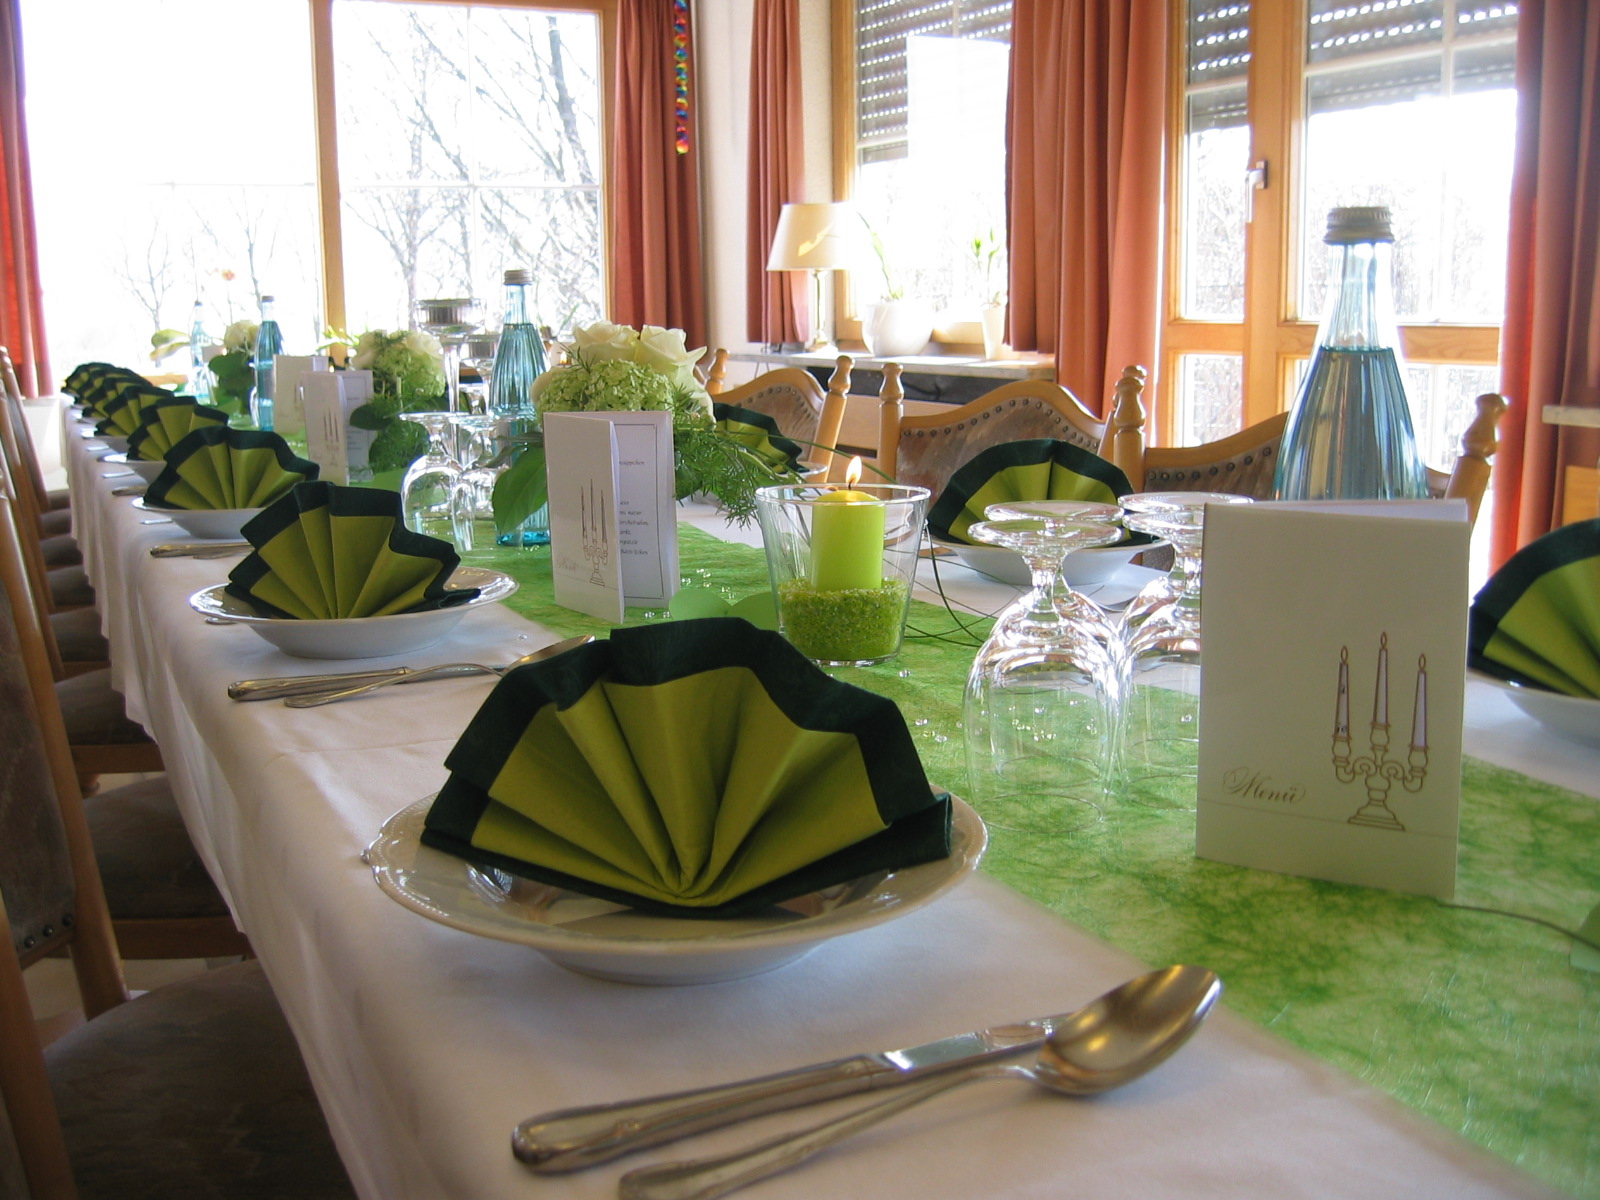  Festliche Tischdekoration beim ehemaligen Gasthaus Adler in Wißgoldingen 